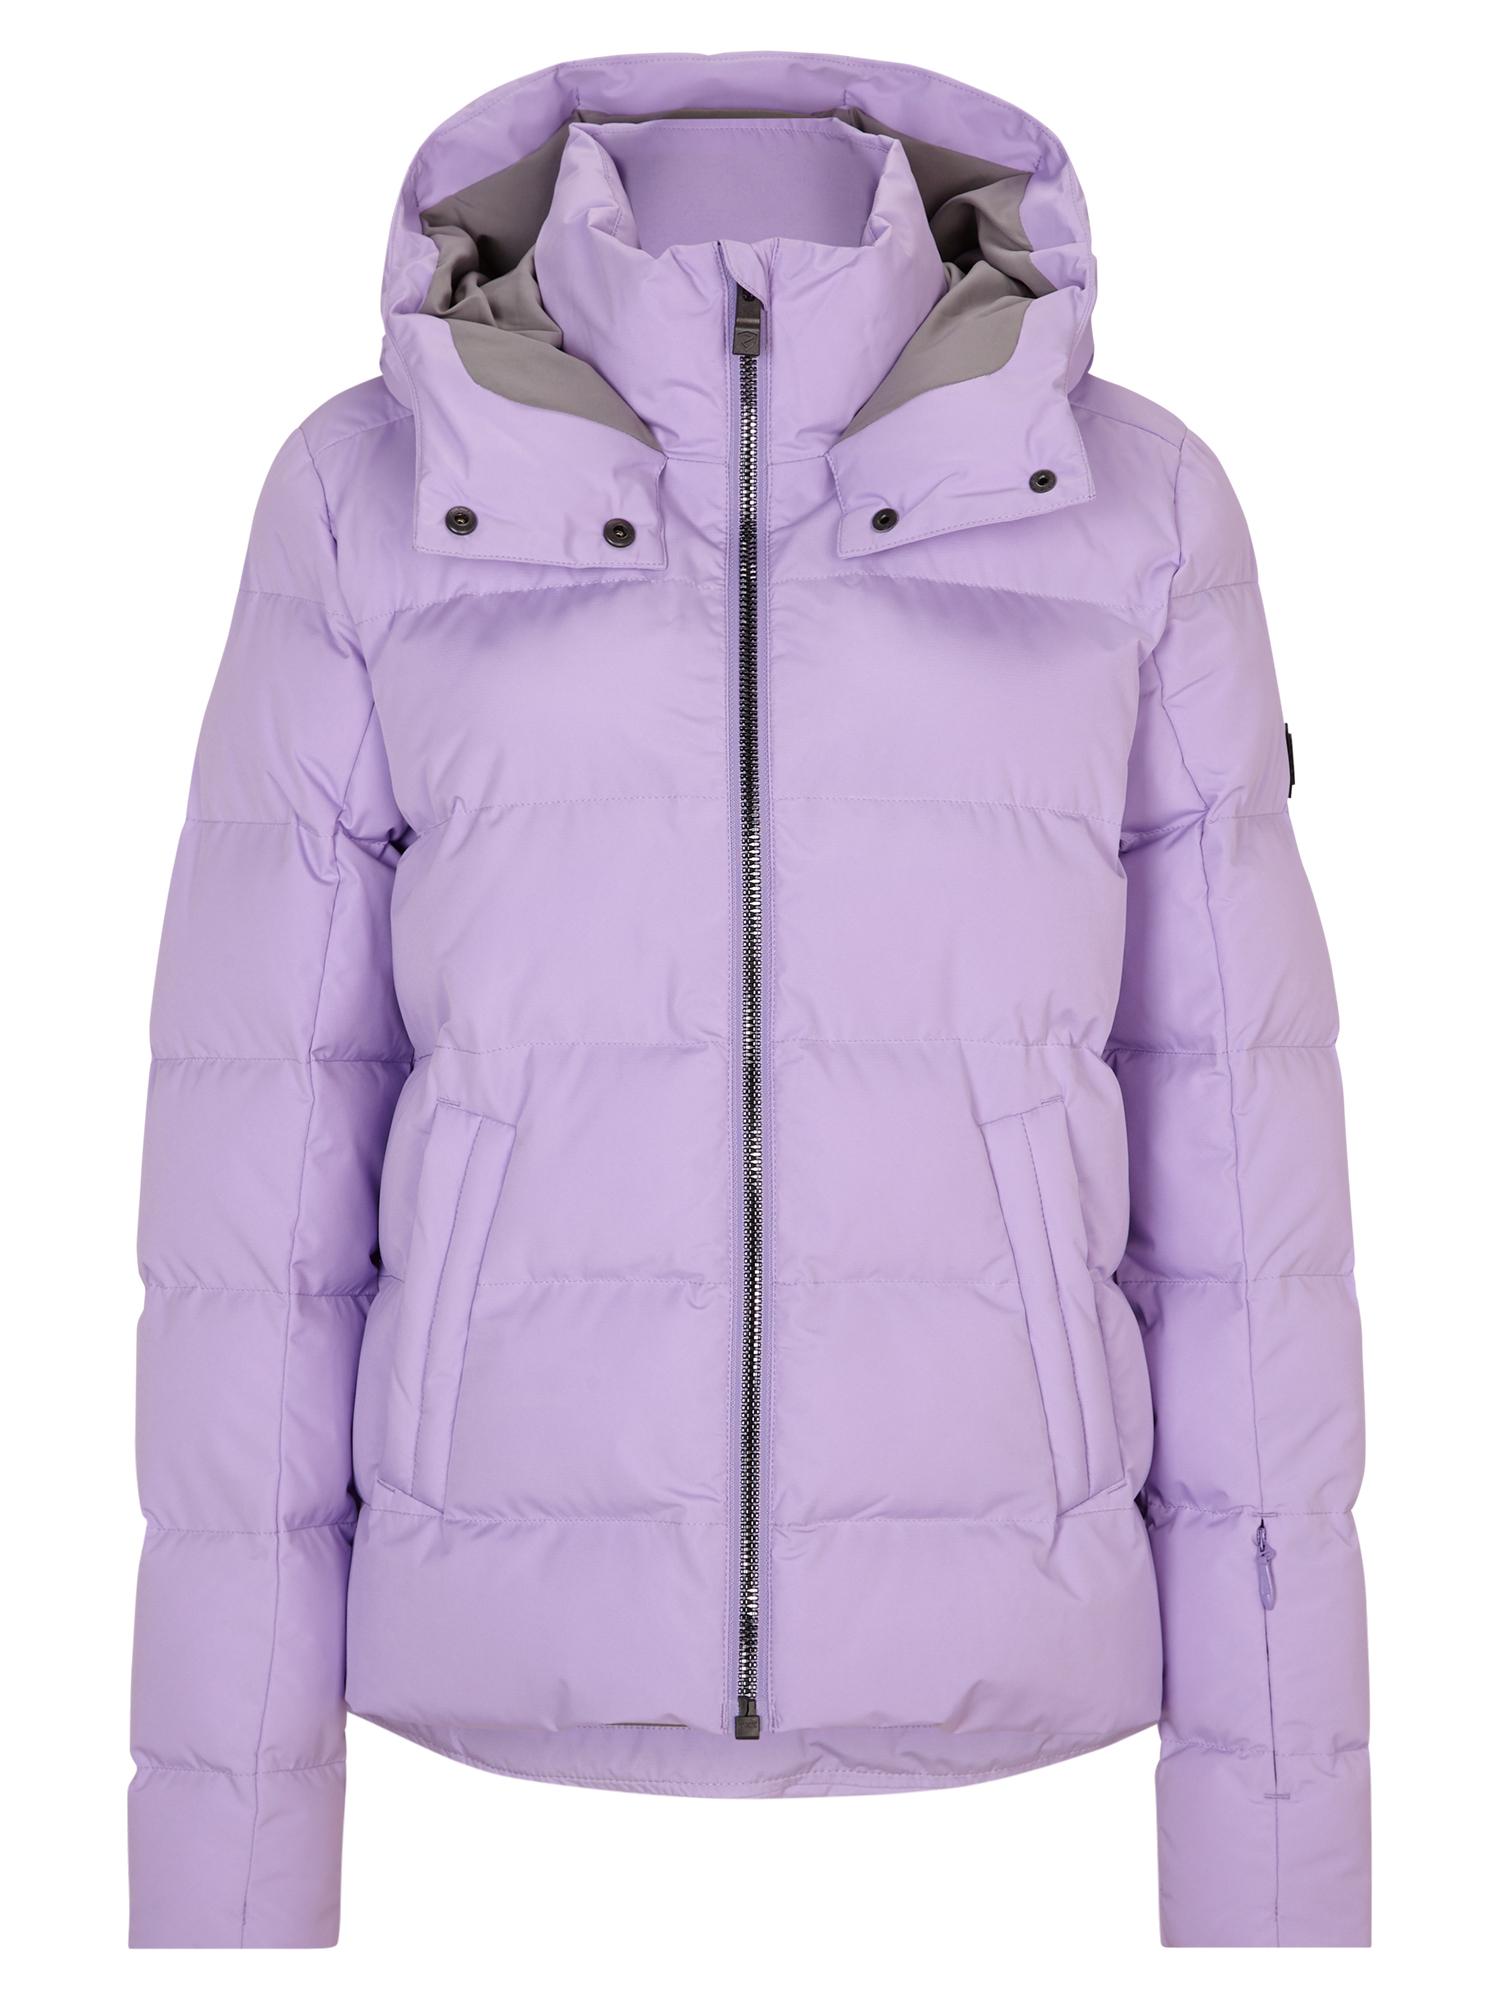 Ziener TUSJA Skijacke Shop kaufen im lilac Damen sweet Online von SportScheck